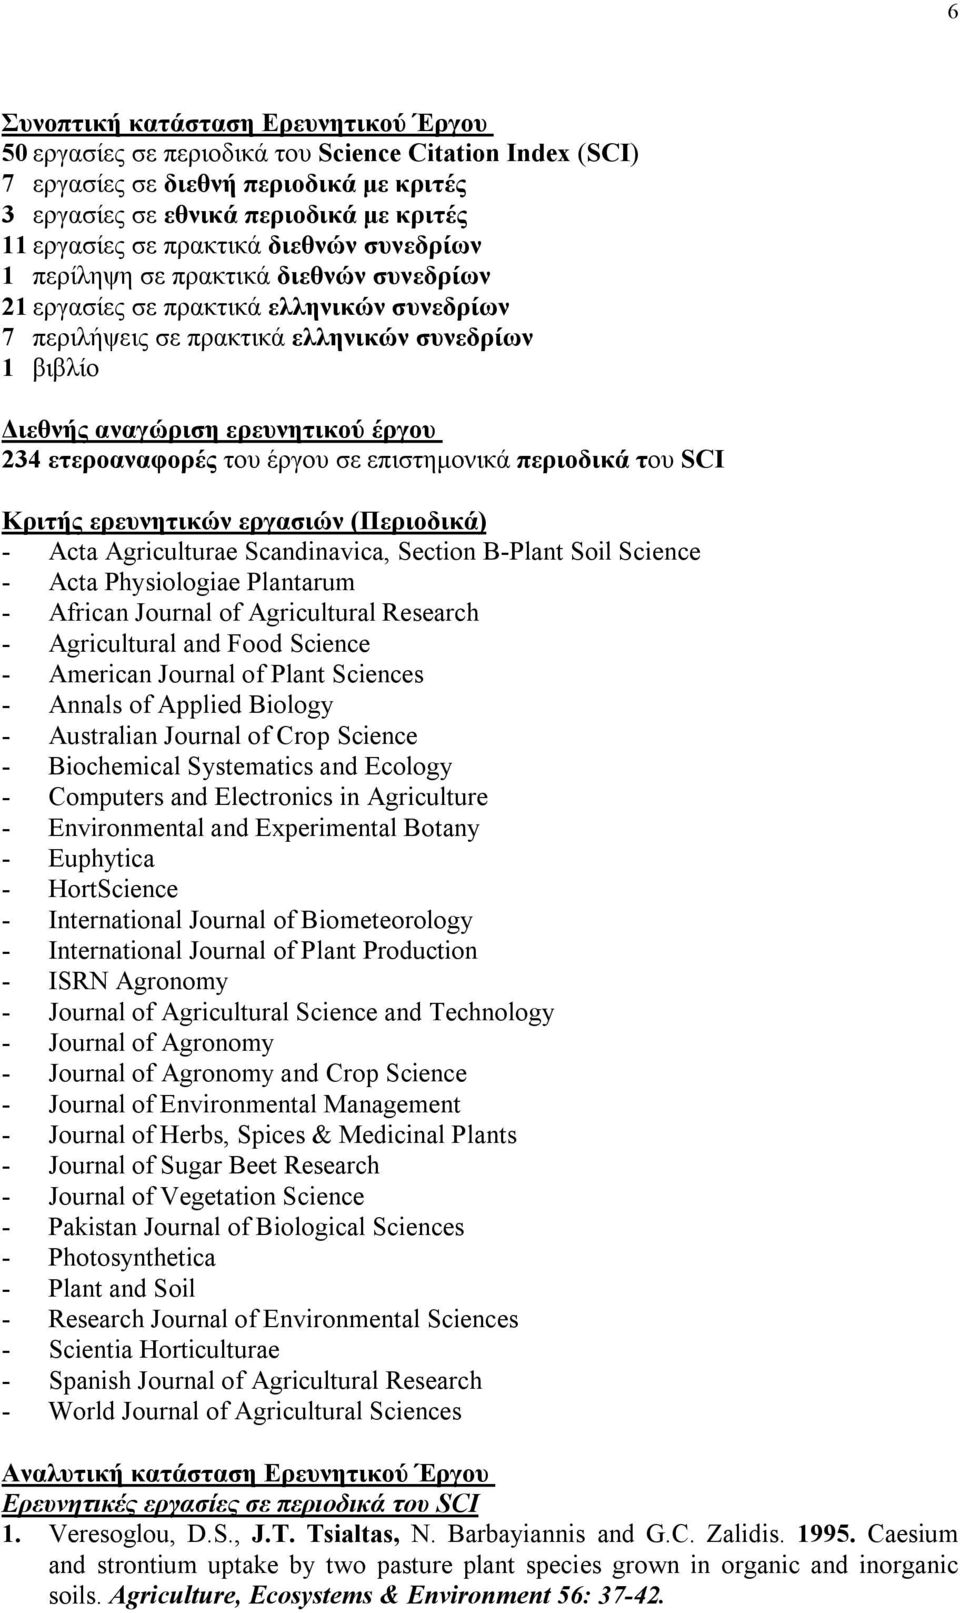 έργου 234 ετεροαναφορές του έργου σε επιστημονικά περιοδικά του SCI Κριτής ερευνητικών εργασιών (Περιοδικά) - Acta Agriculturae Scandinavica, Section B-Plant Soil Science - Acta Physiologiae